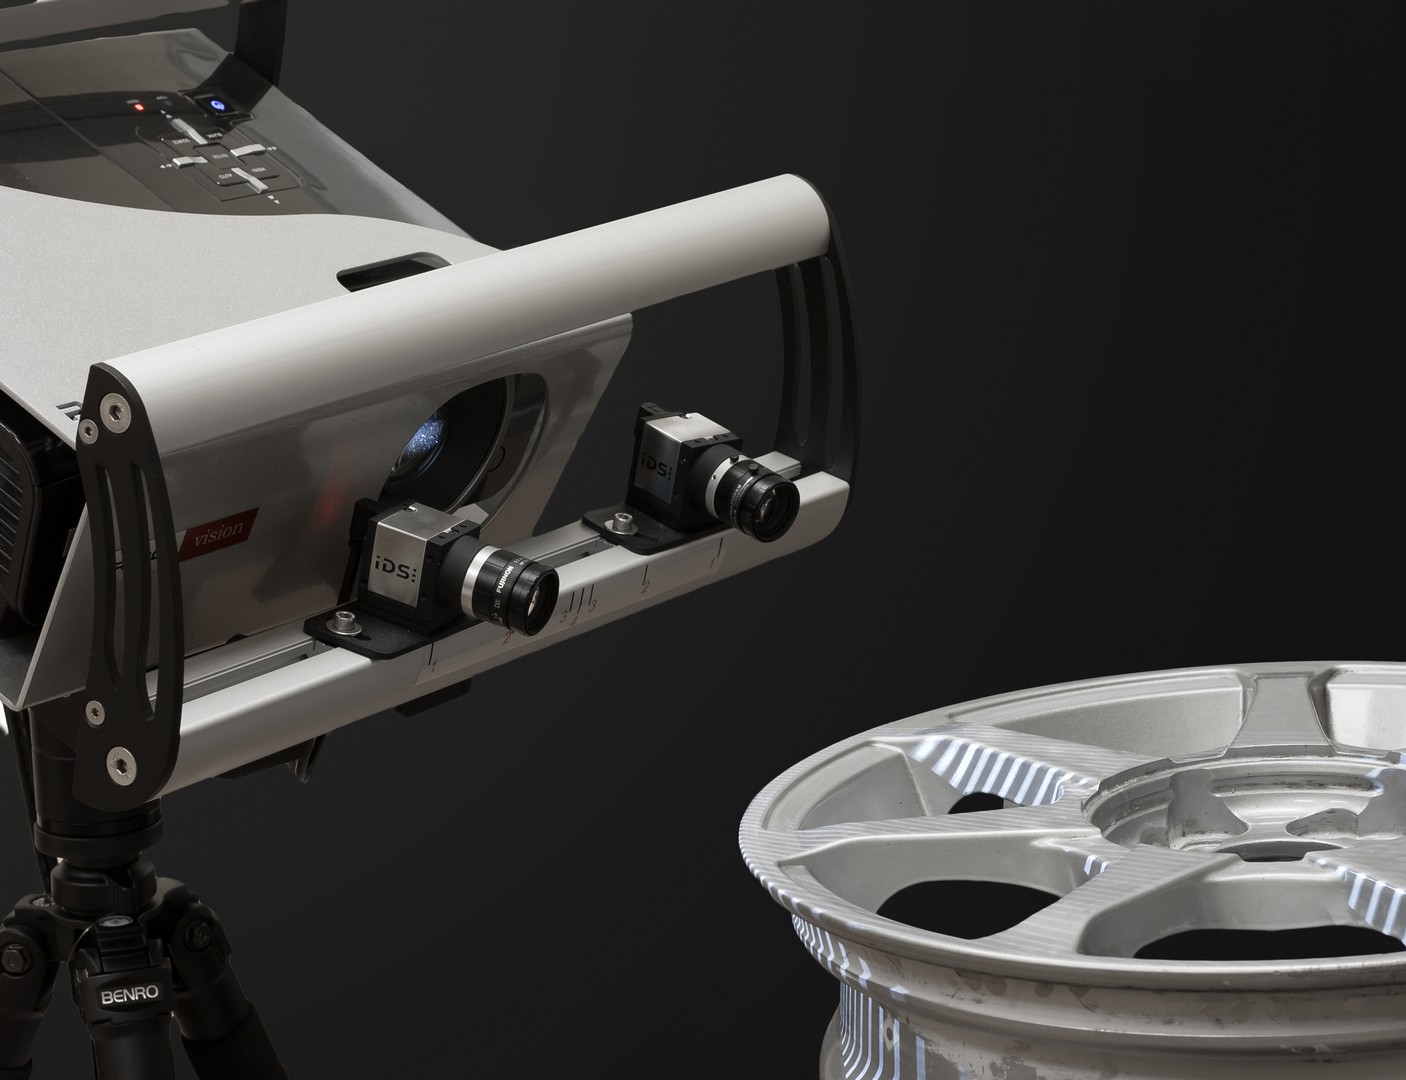 картинка 3D сканер RangeVision (Standard) Интернет-магазин «3DTool»